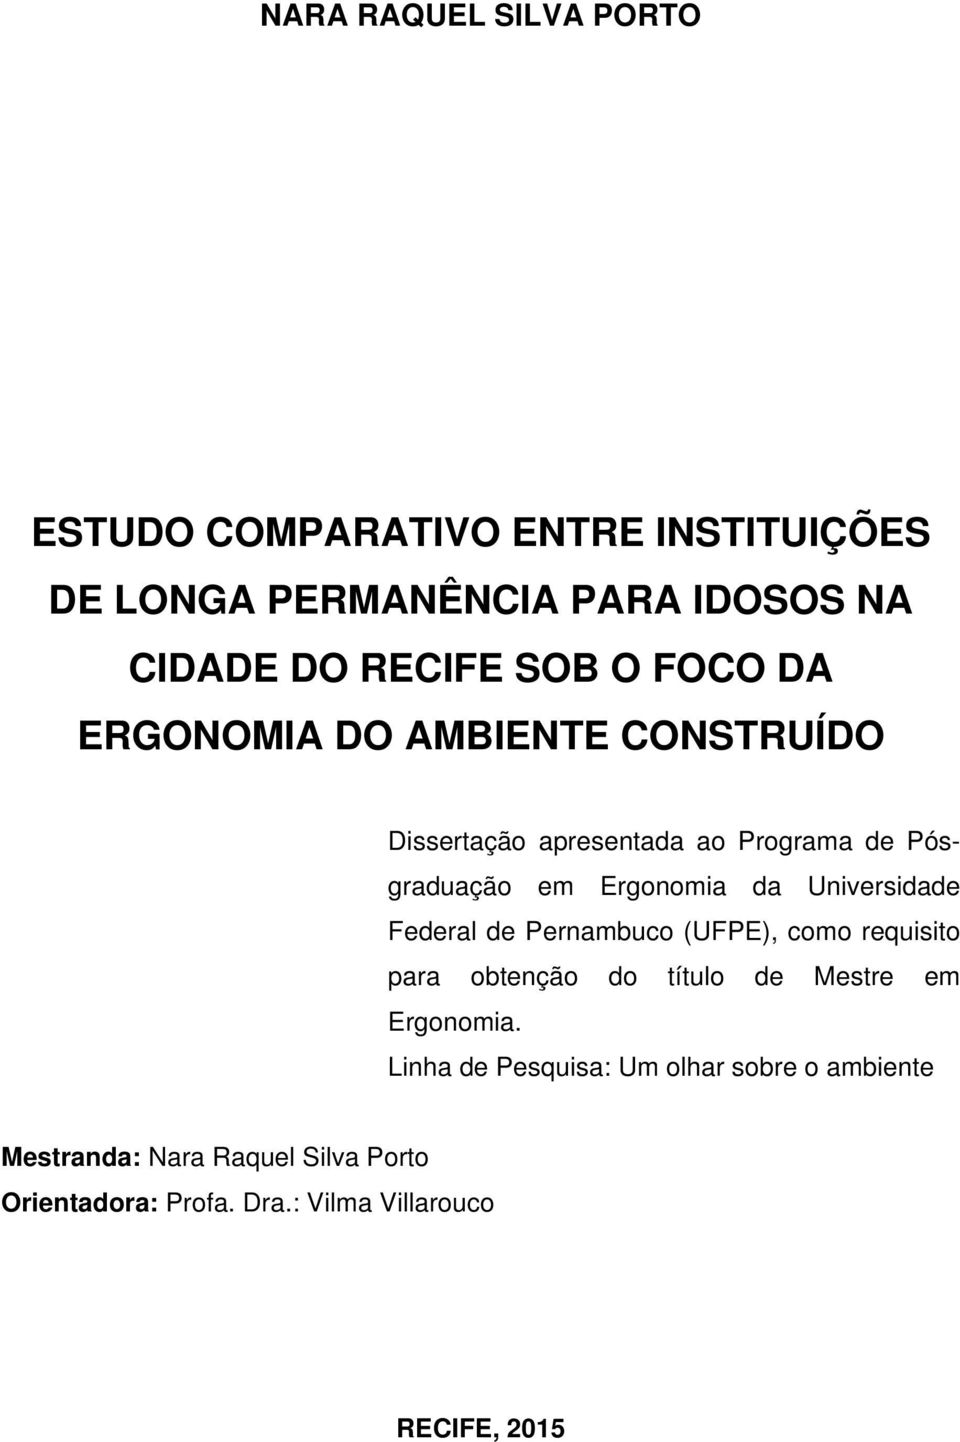 Universidade Federal de Pernambuco (UFPE), como requisito para obtenção do título de Mestre em Ergonomia.